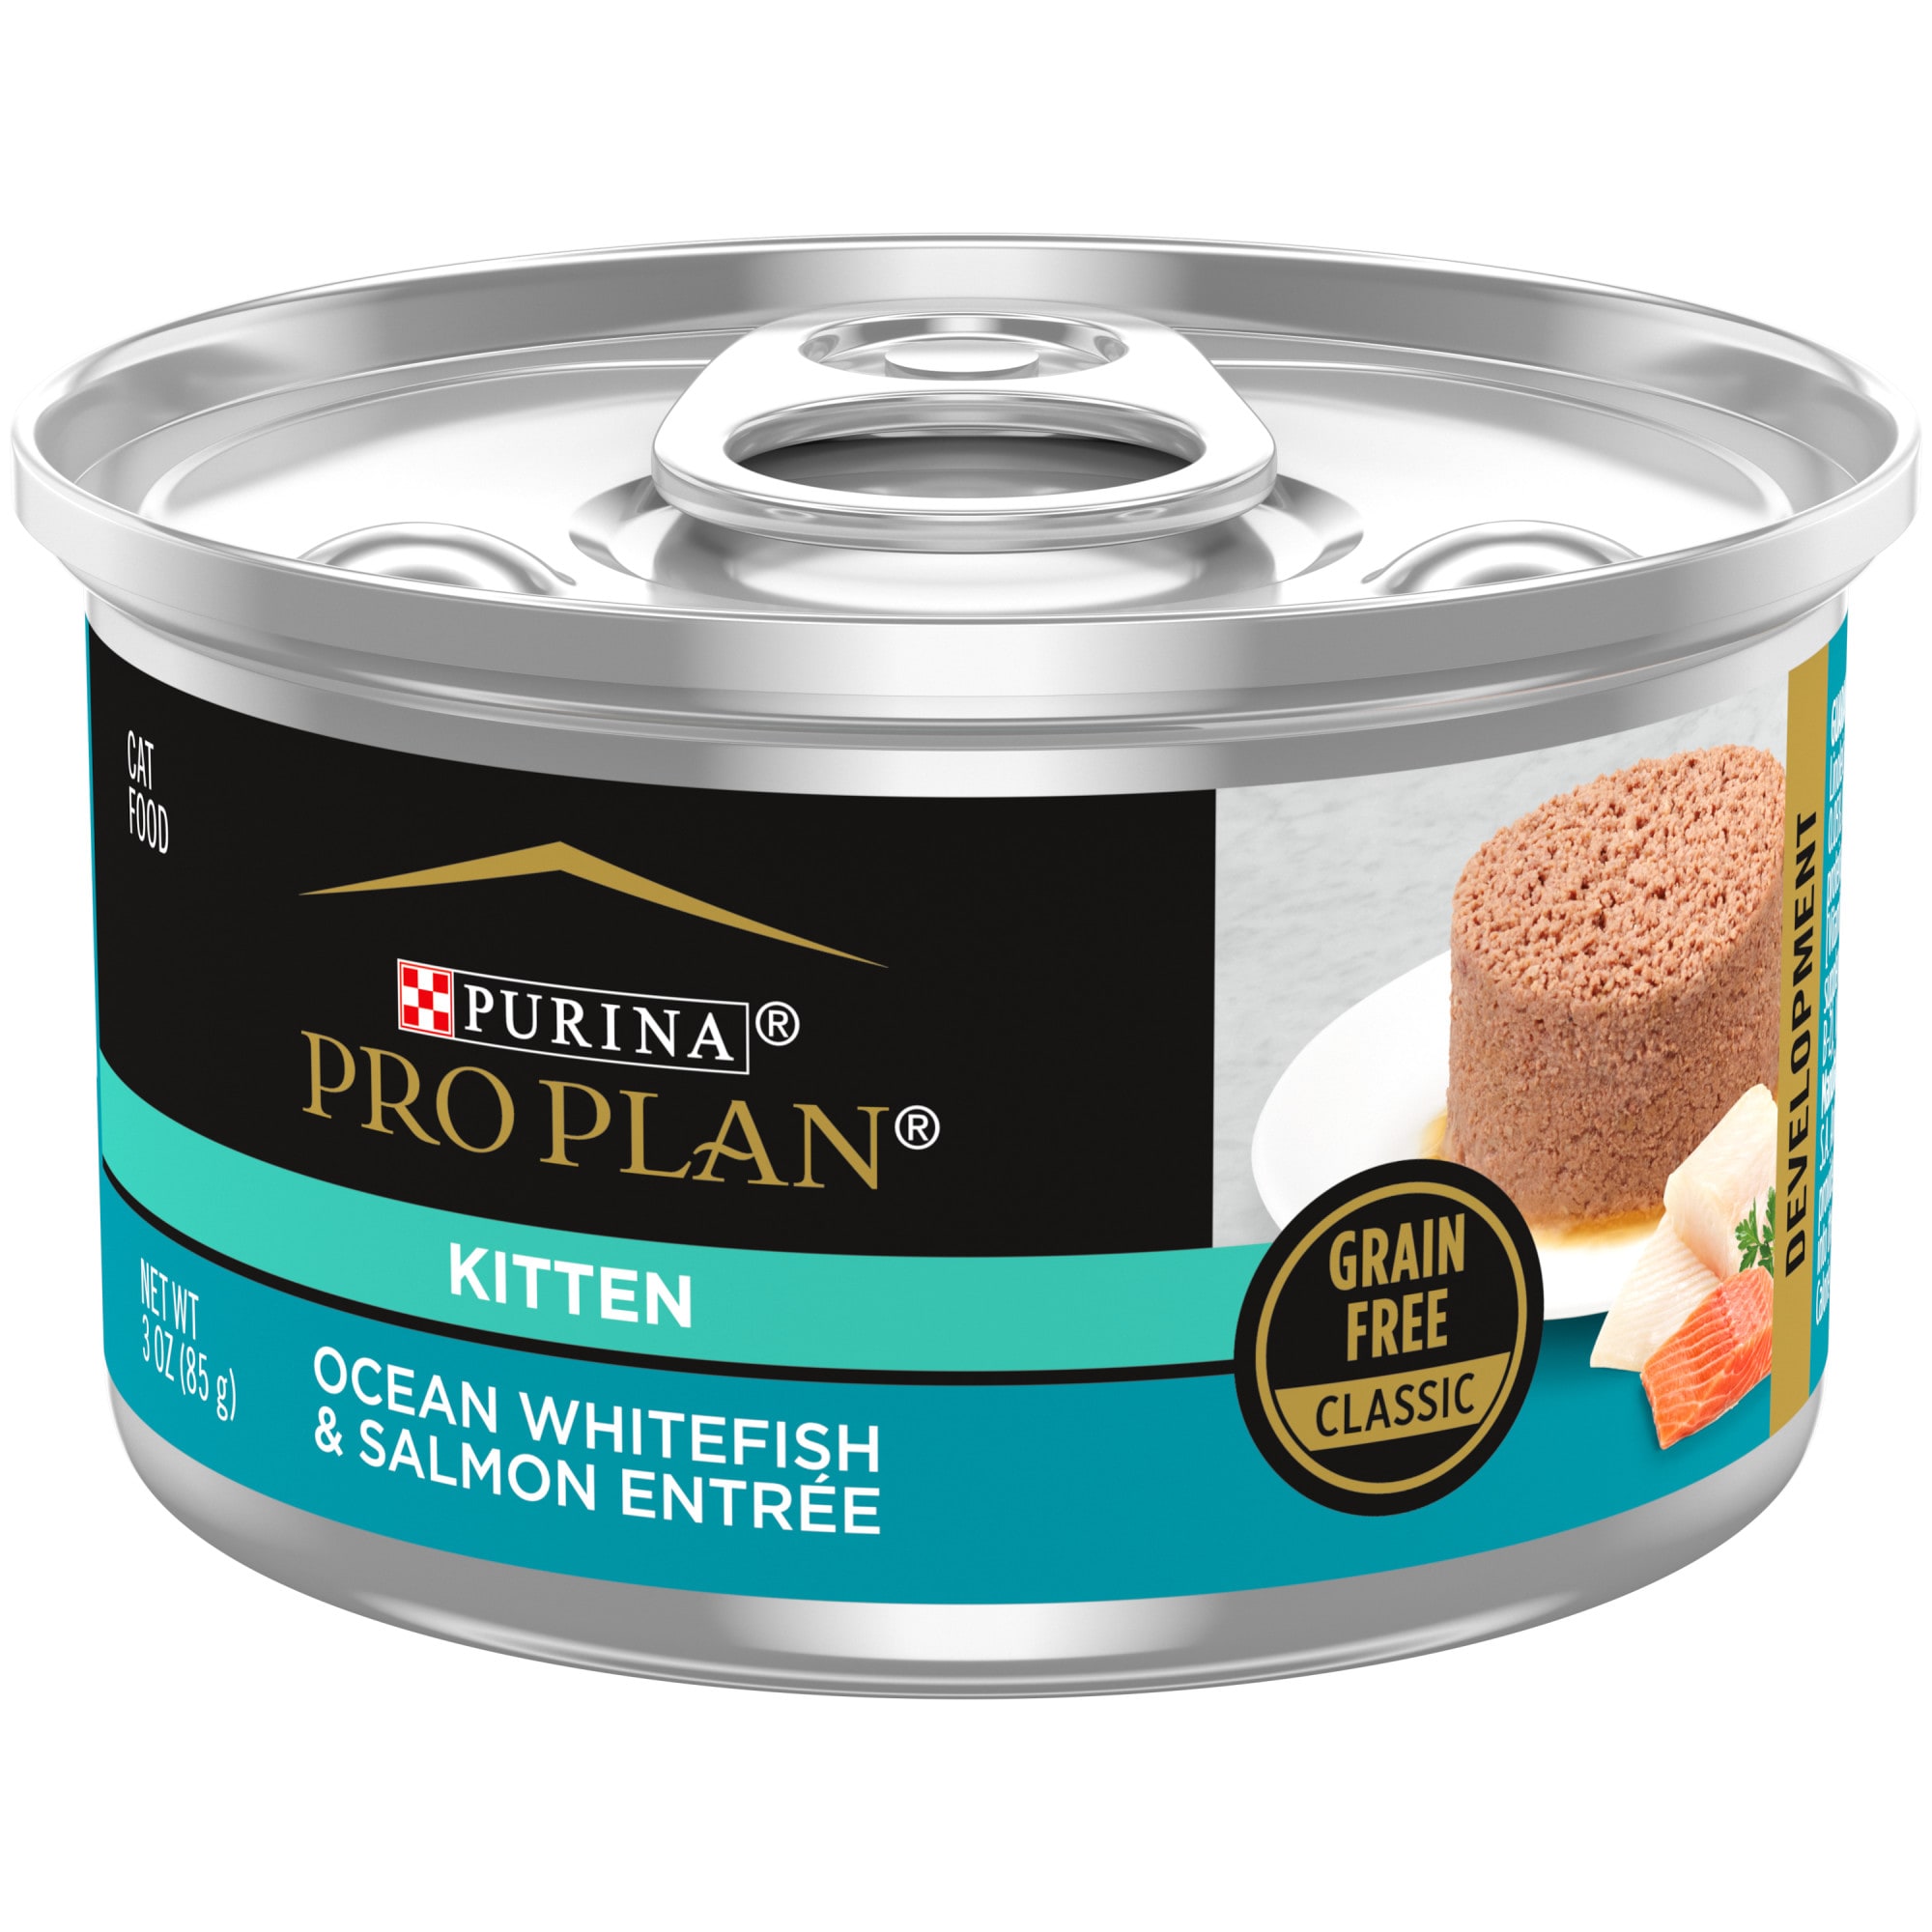 purina grain free kitten food